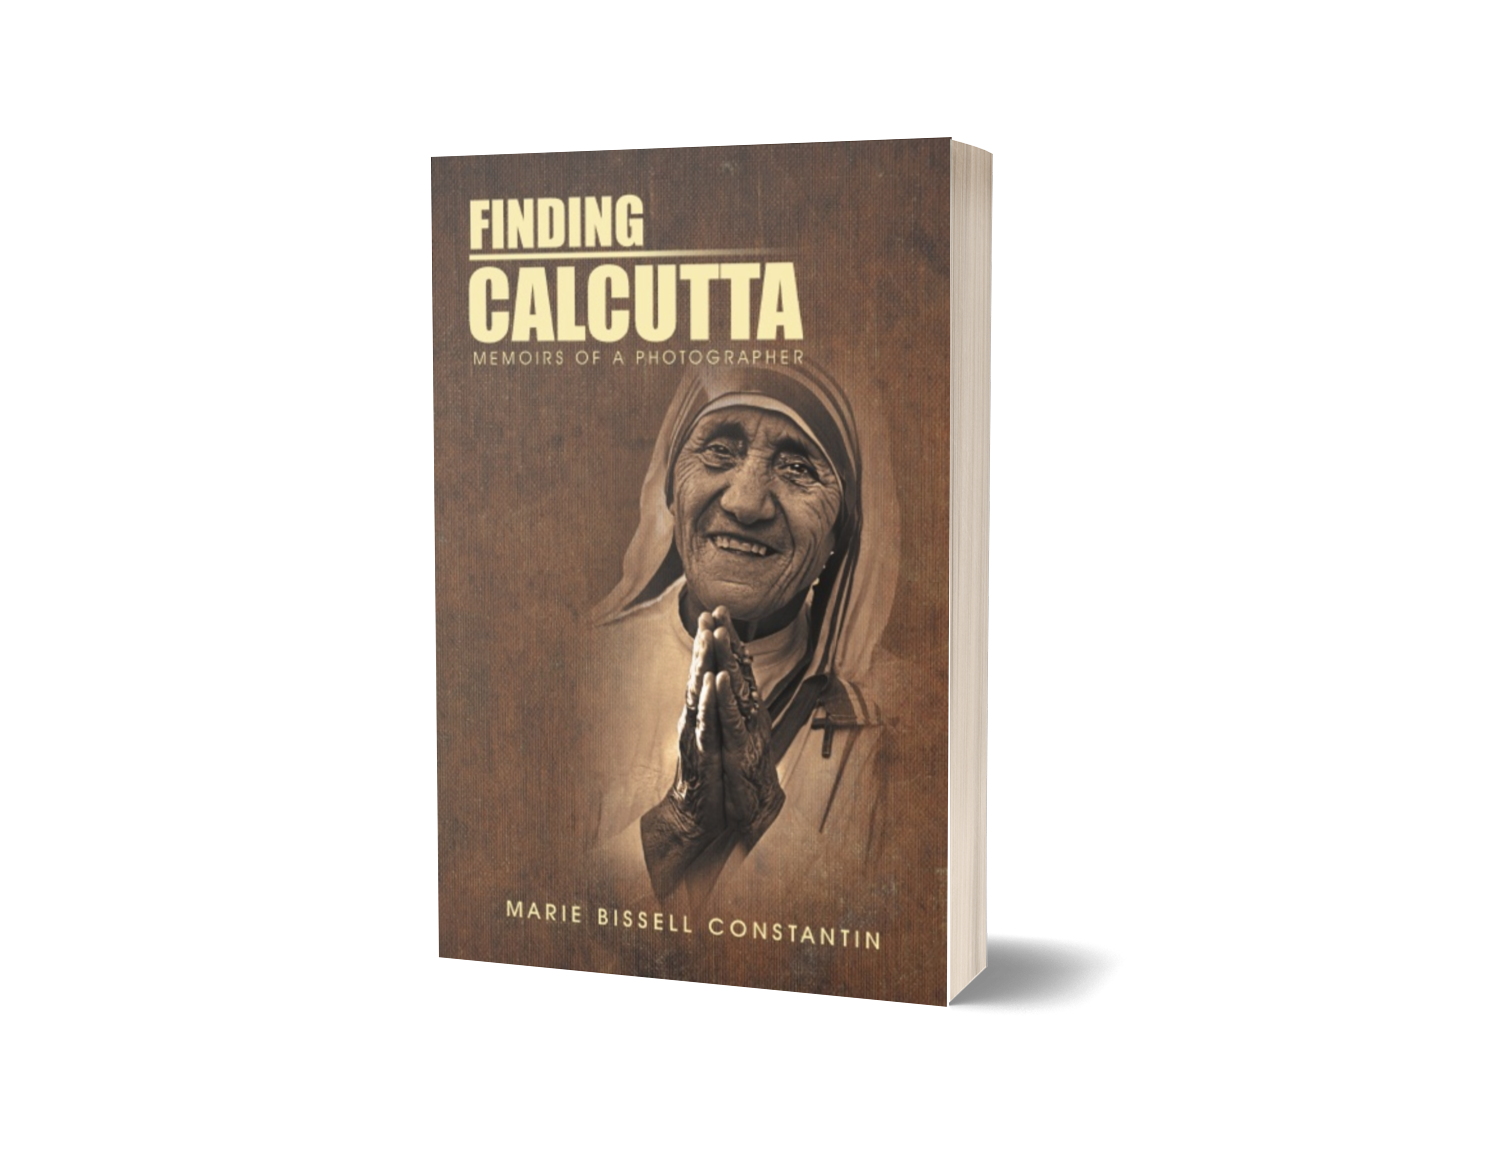 Finding Calcutta: Memoirs of a Photographer